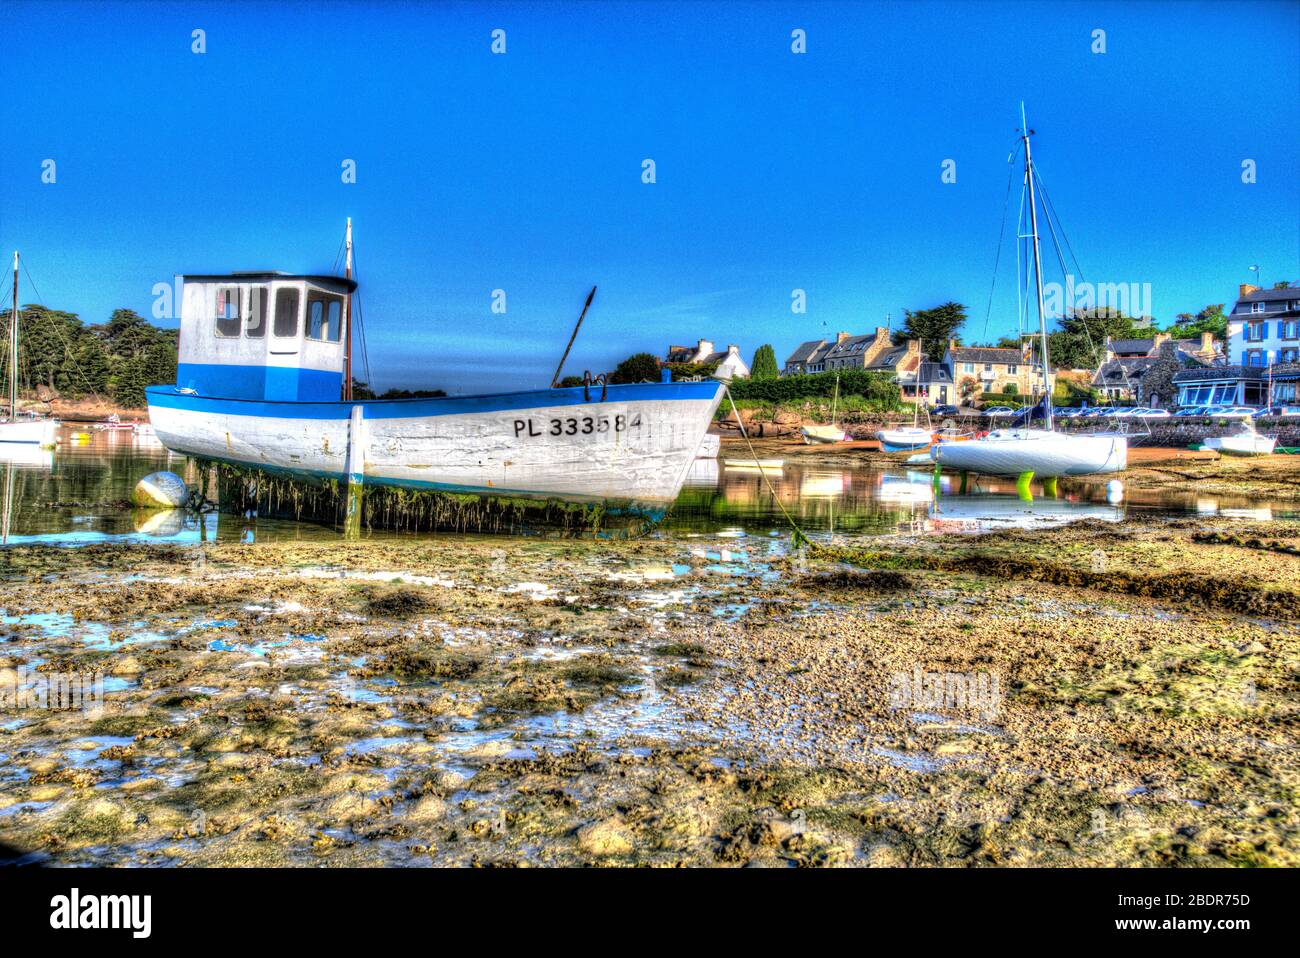 Village de Plouhmanac’h, France. Vue artistique du matin d'un bateau de pêche ancré sur les jambes du bateau au Port de Ploumanac'h. Banque D'Images